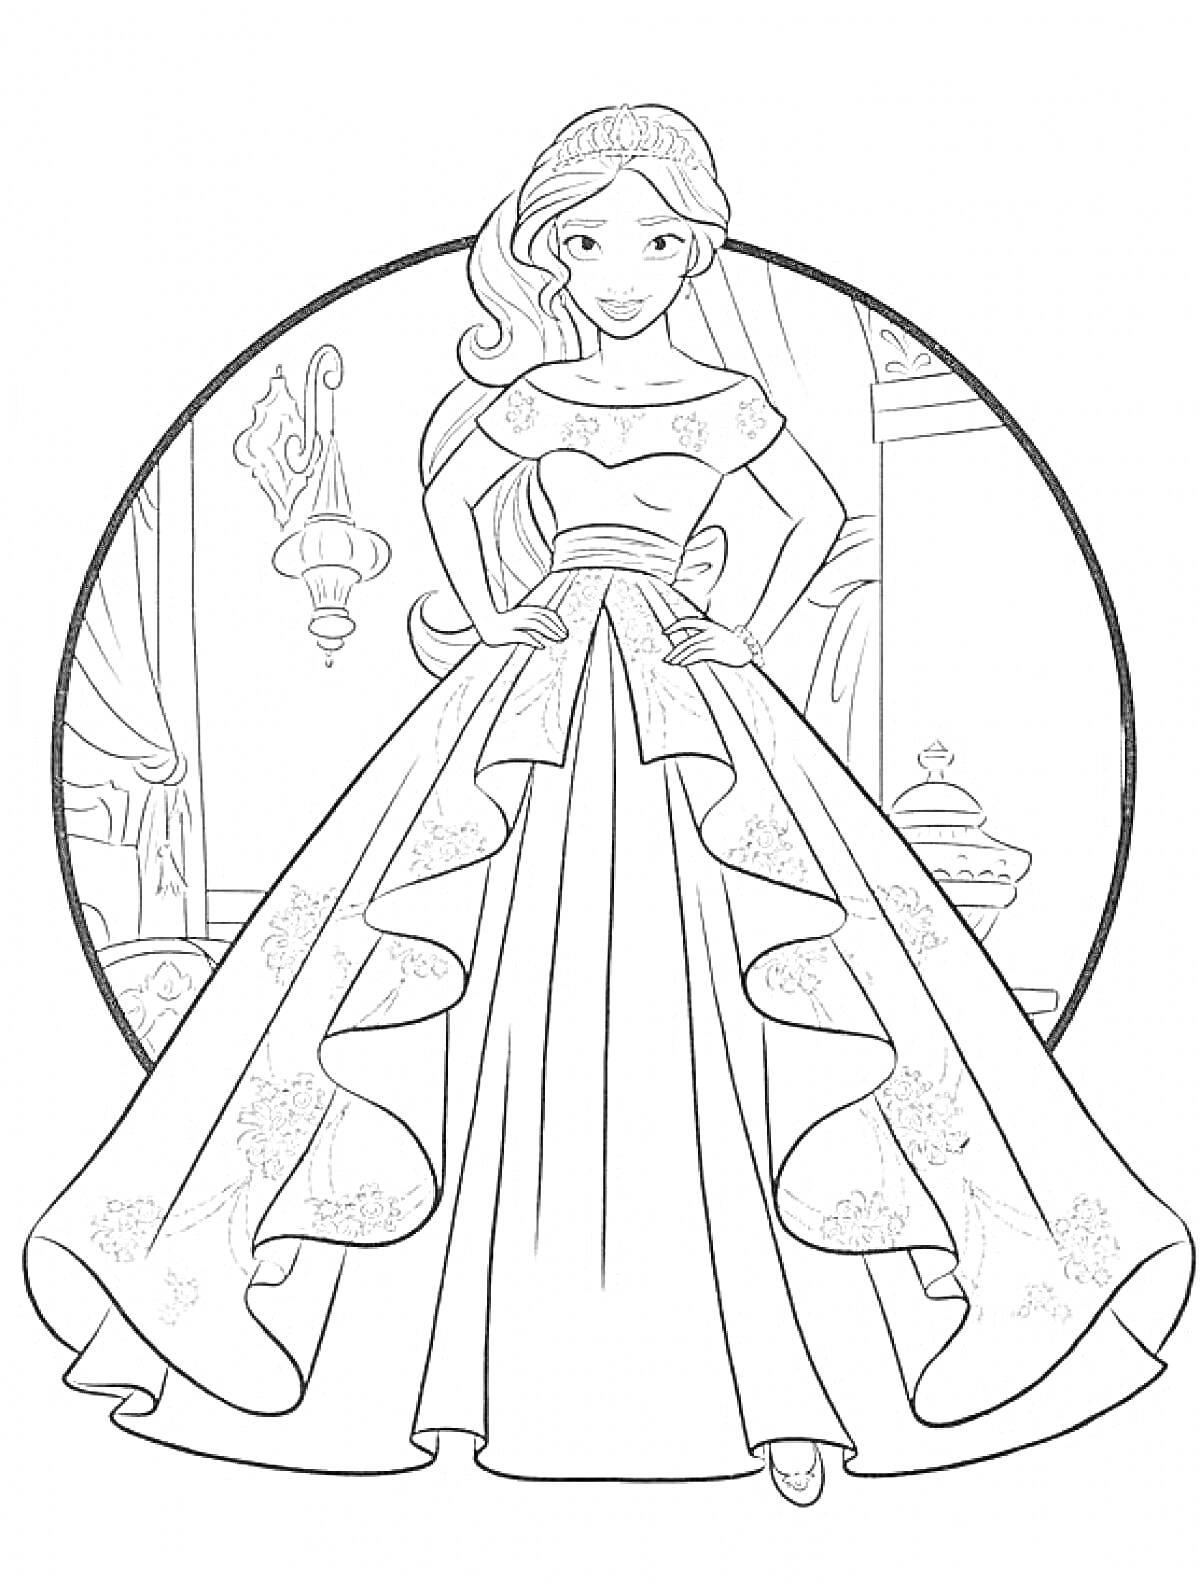 Принцесса в бальном платье с цветочным орнаментом на юбке, на фоне дворца с лампой и окном